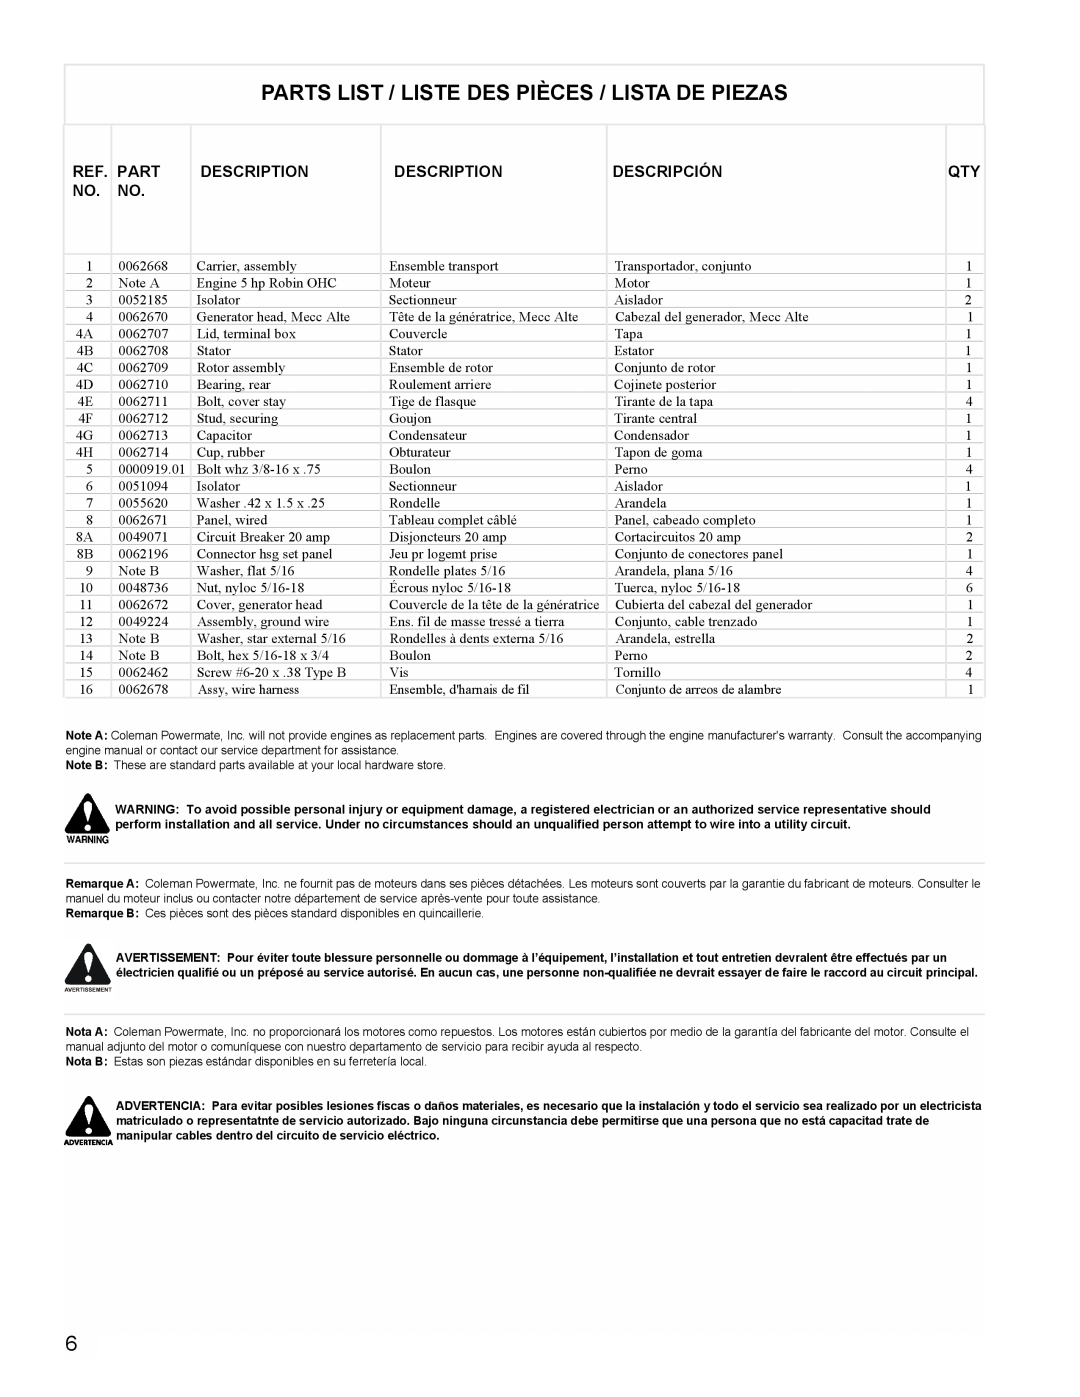 Powermate PM0603250 manual Parts List / Liste Des Pièces / Lista De Piezas, Description, Descripción 